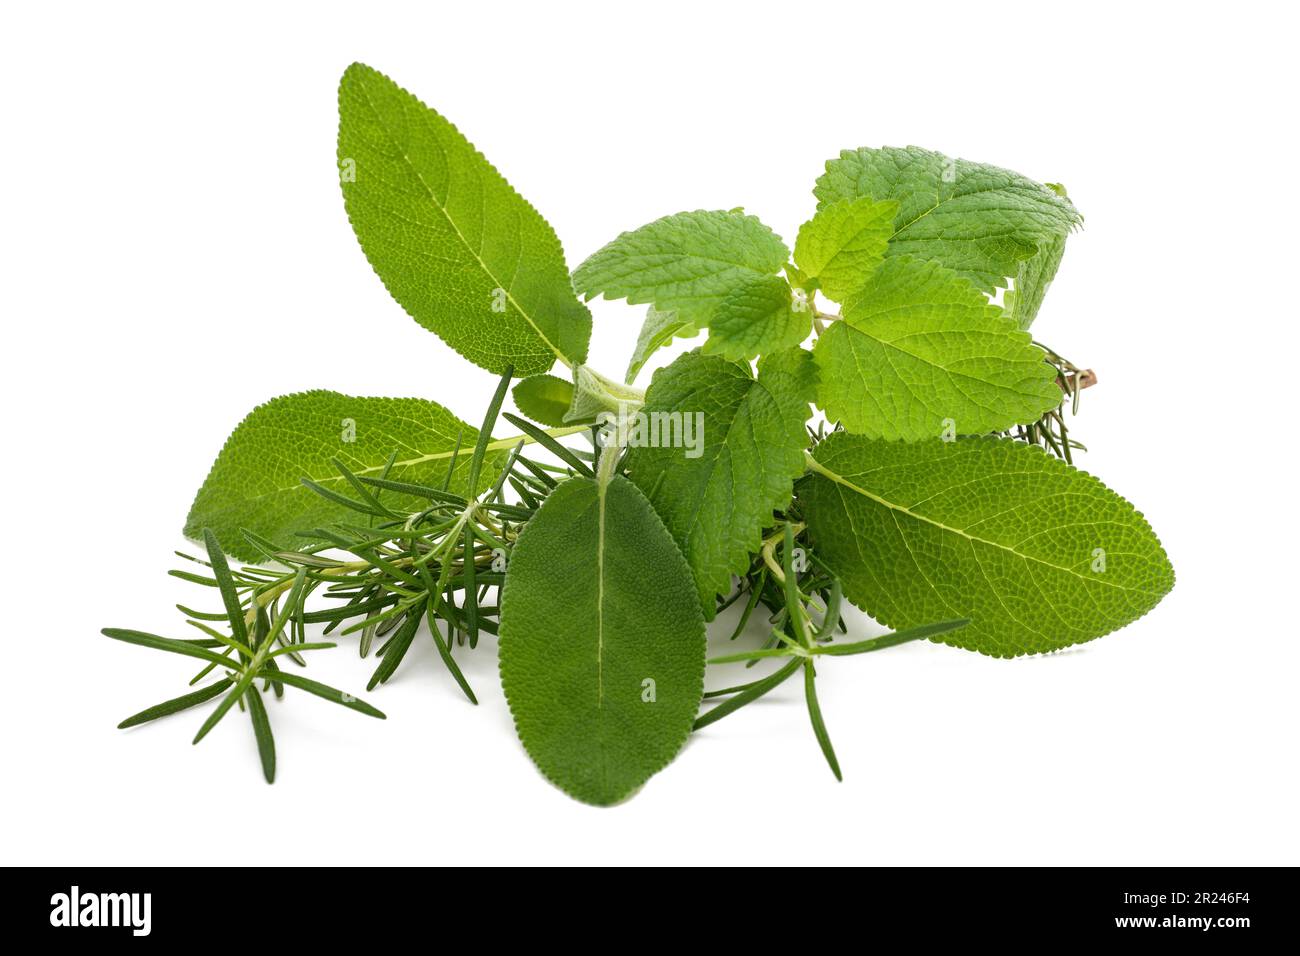 Rosemary sage and lemon balm isolated on white background Stock Photo